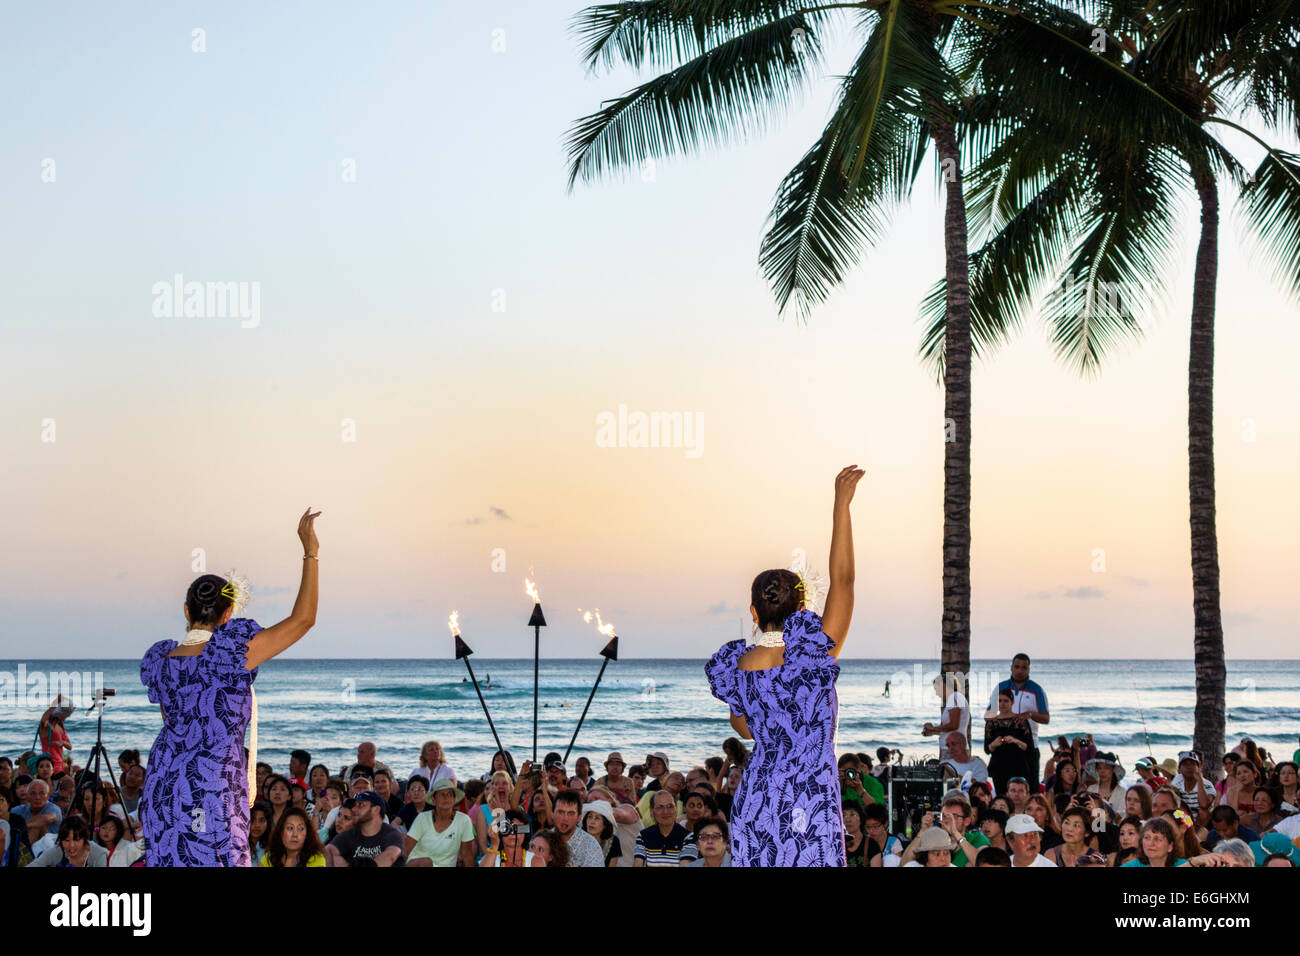 Hawaii,Hawaiian,Honolulu,Waikiki Beach,Kuhio Beach Park,Hyatt Regency Hula Show,public gratuit,Pacific Ocean,femme femme femme femme,danseuse,torche,lit,USA,US Banque D'Images